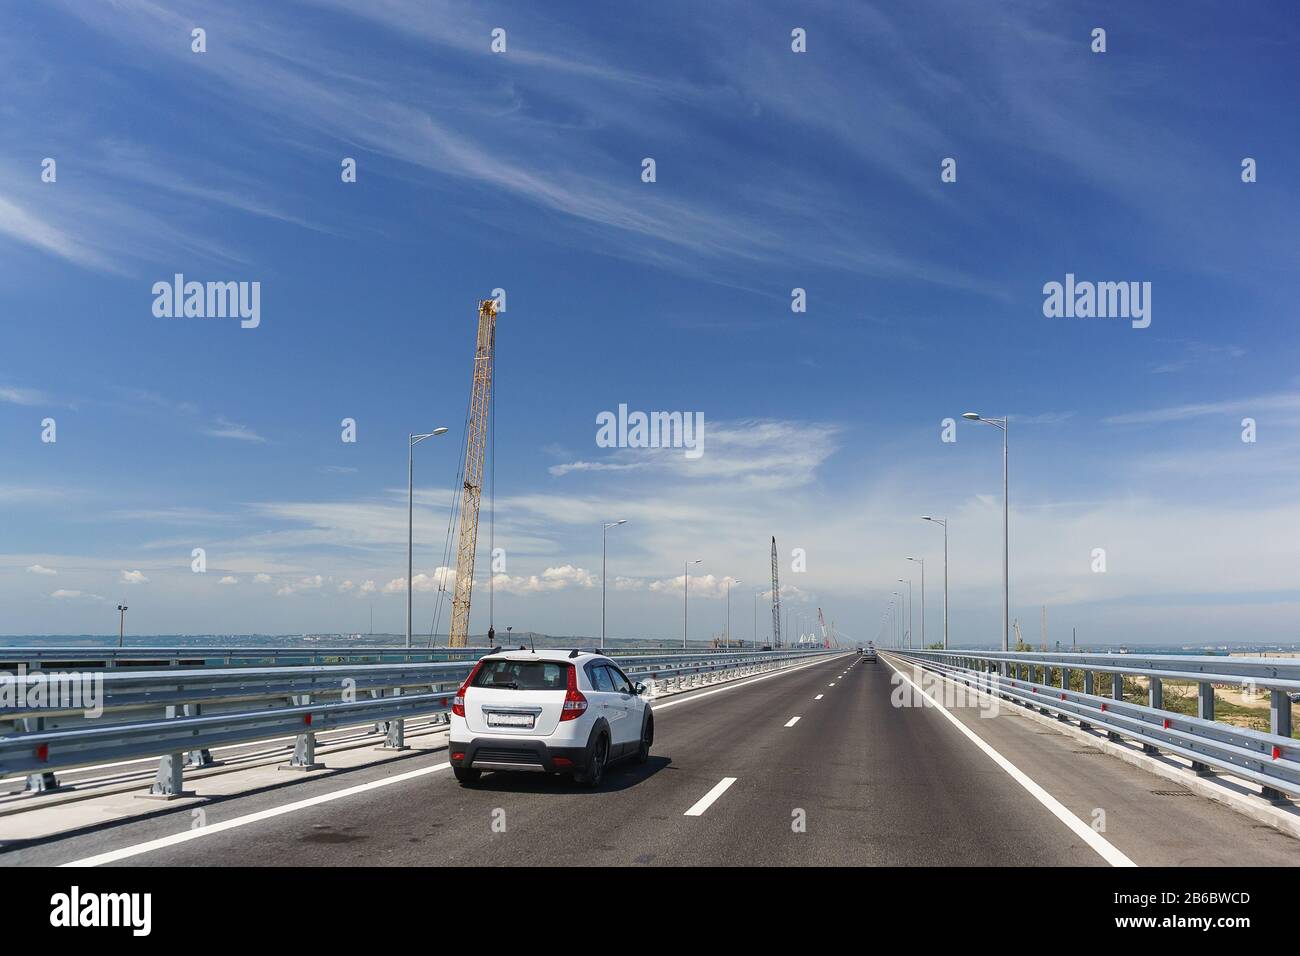 Voitures en voiture sur le Tuzla Spit sur la péninsule de Taman. Pont de Crimée sur un Sunny day. Sur la gauche se trouve la construction d'un pont ferroviaire. Mai 2018 Banque D'Images